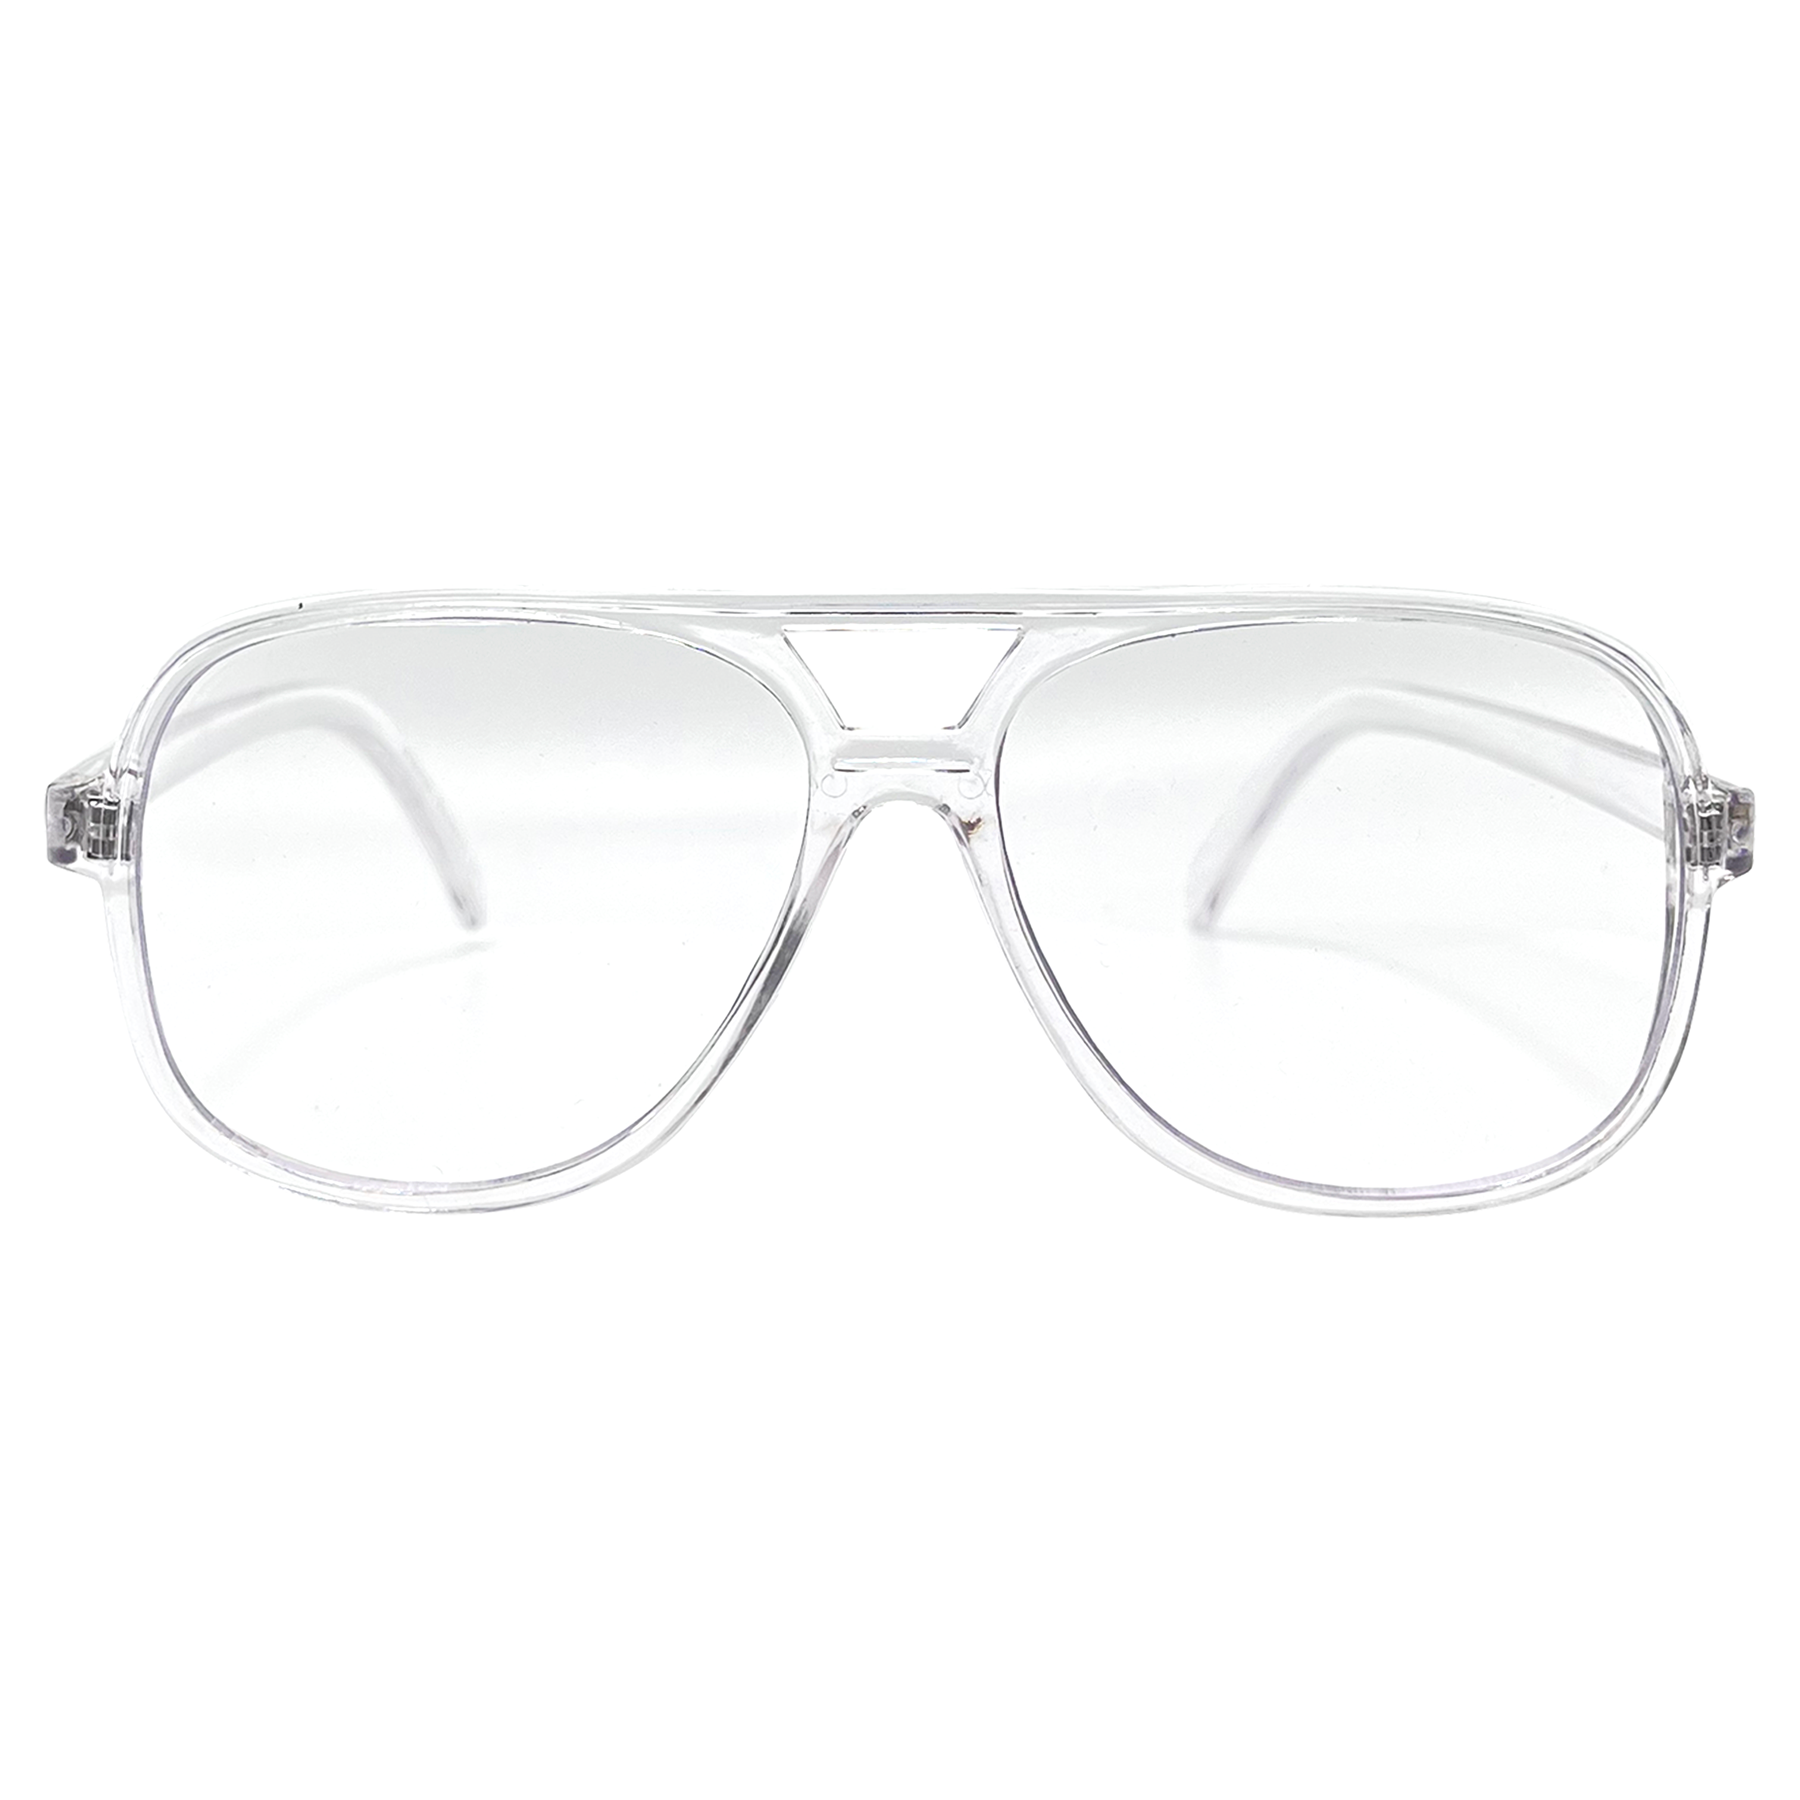 YBOR Crystal Clear Aviator Glasses